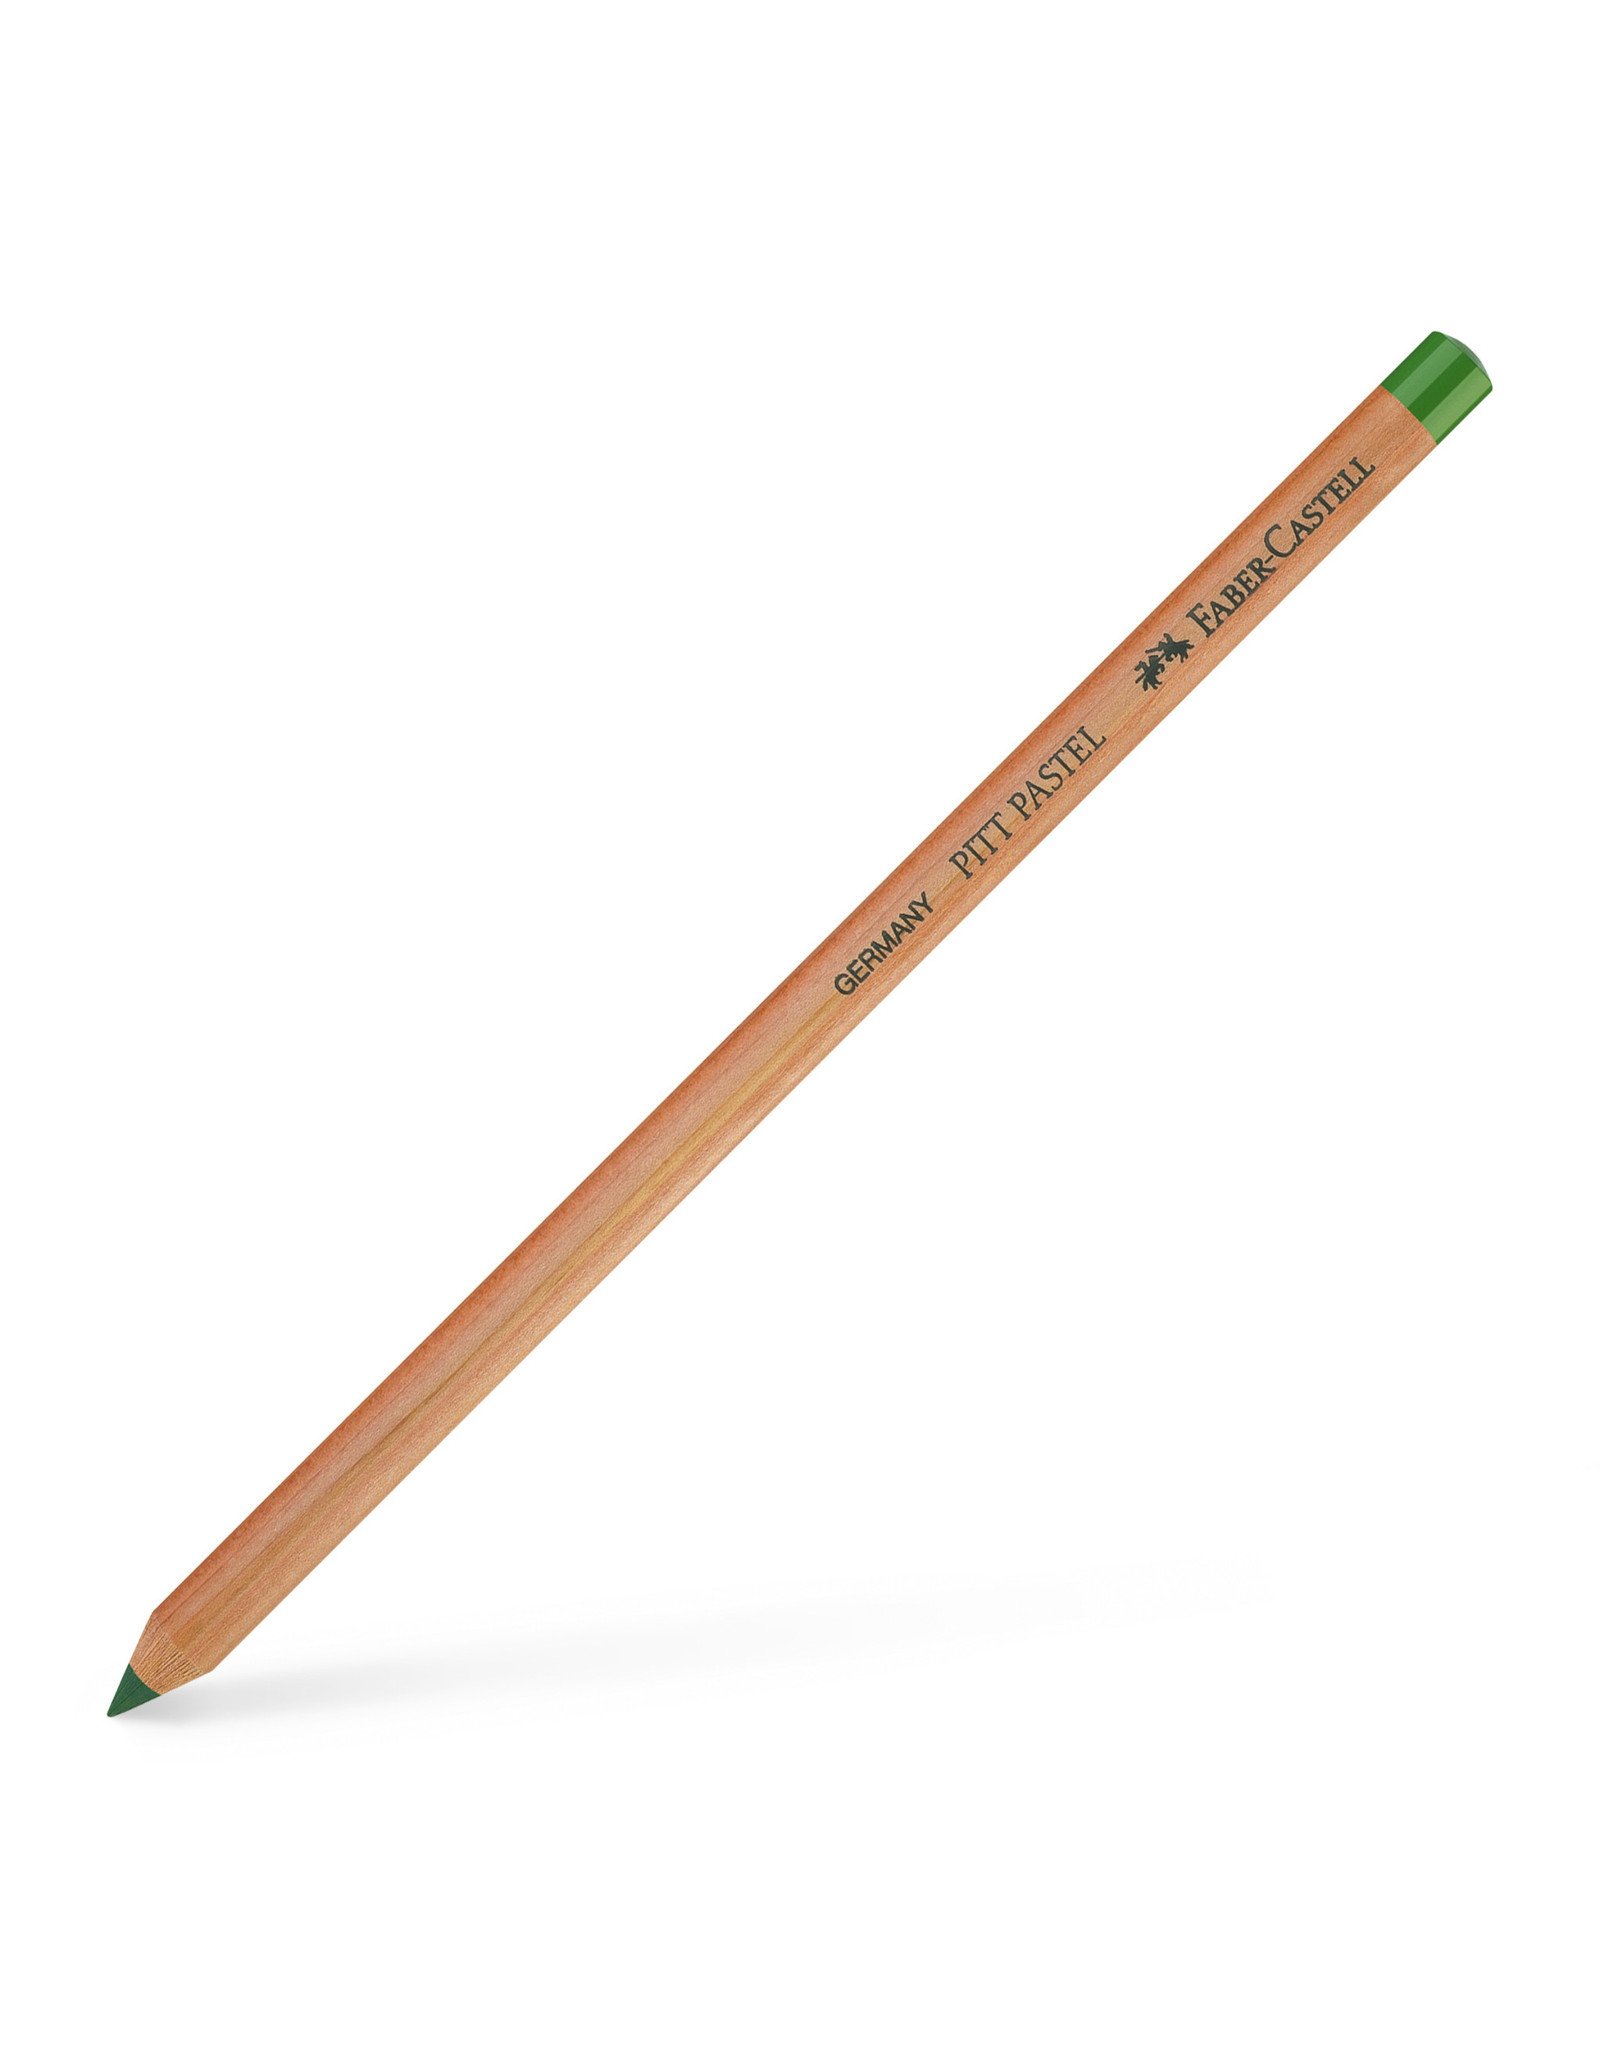 FABER-CASTELL Faber-Castell Pitt Pastel Pencils, Pine Green #267